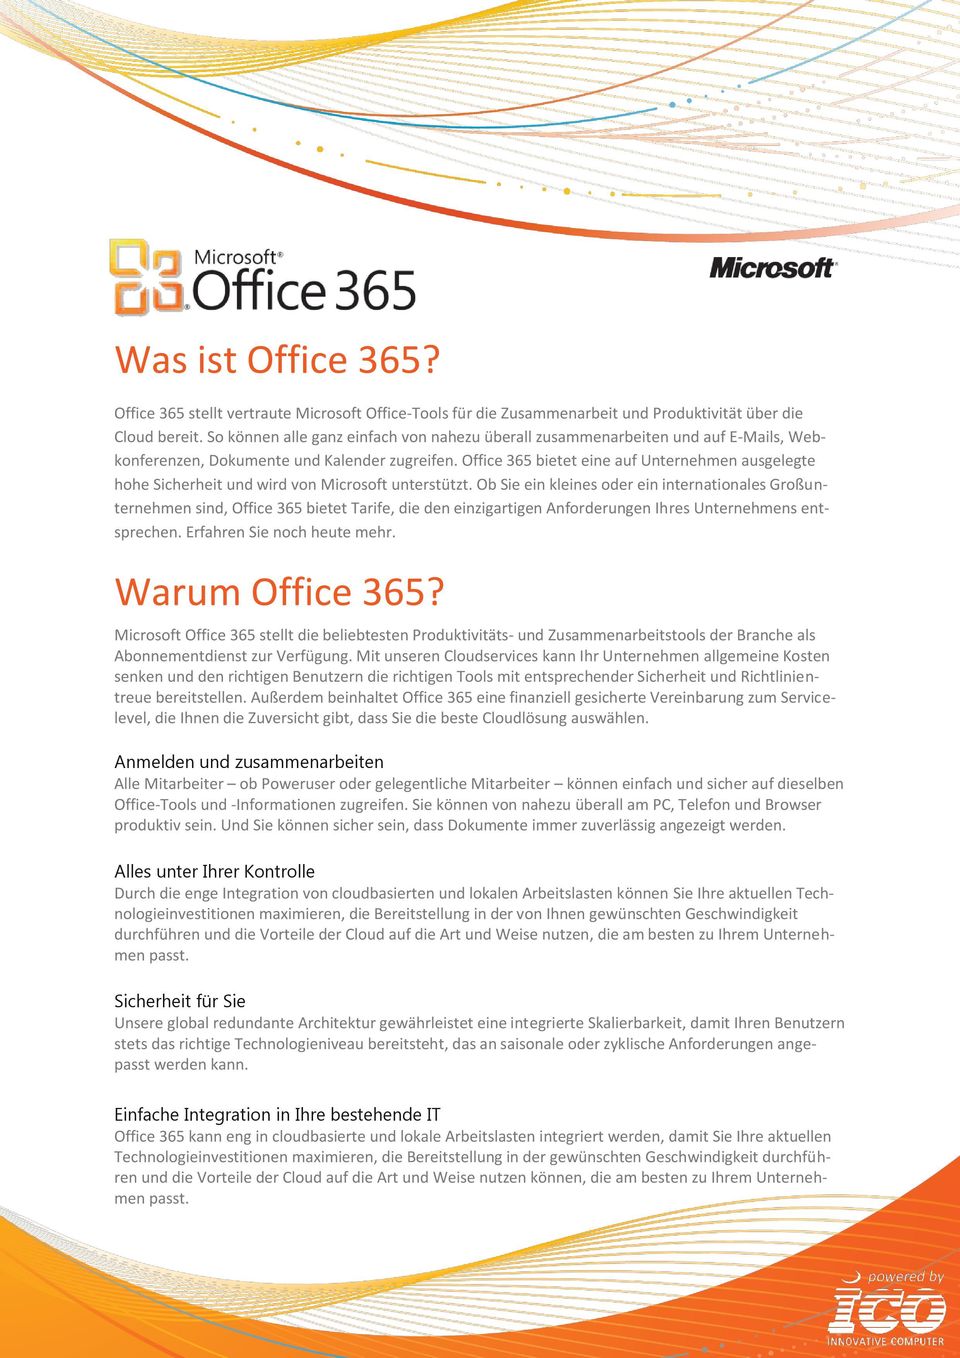 Office 365 bietet eine auf Unternehmen ausgelegte hohe Sicherheit und wird von Microsoft unterstützt.